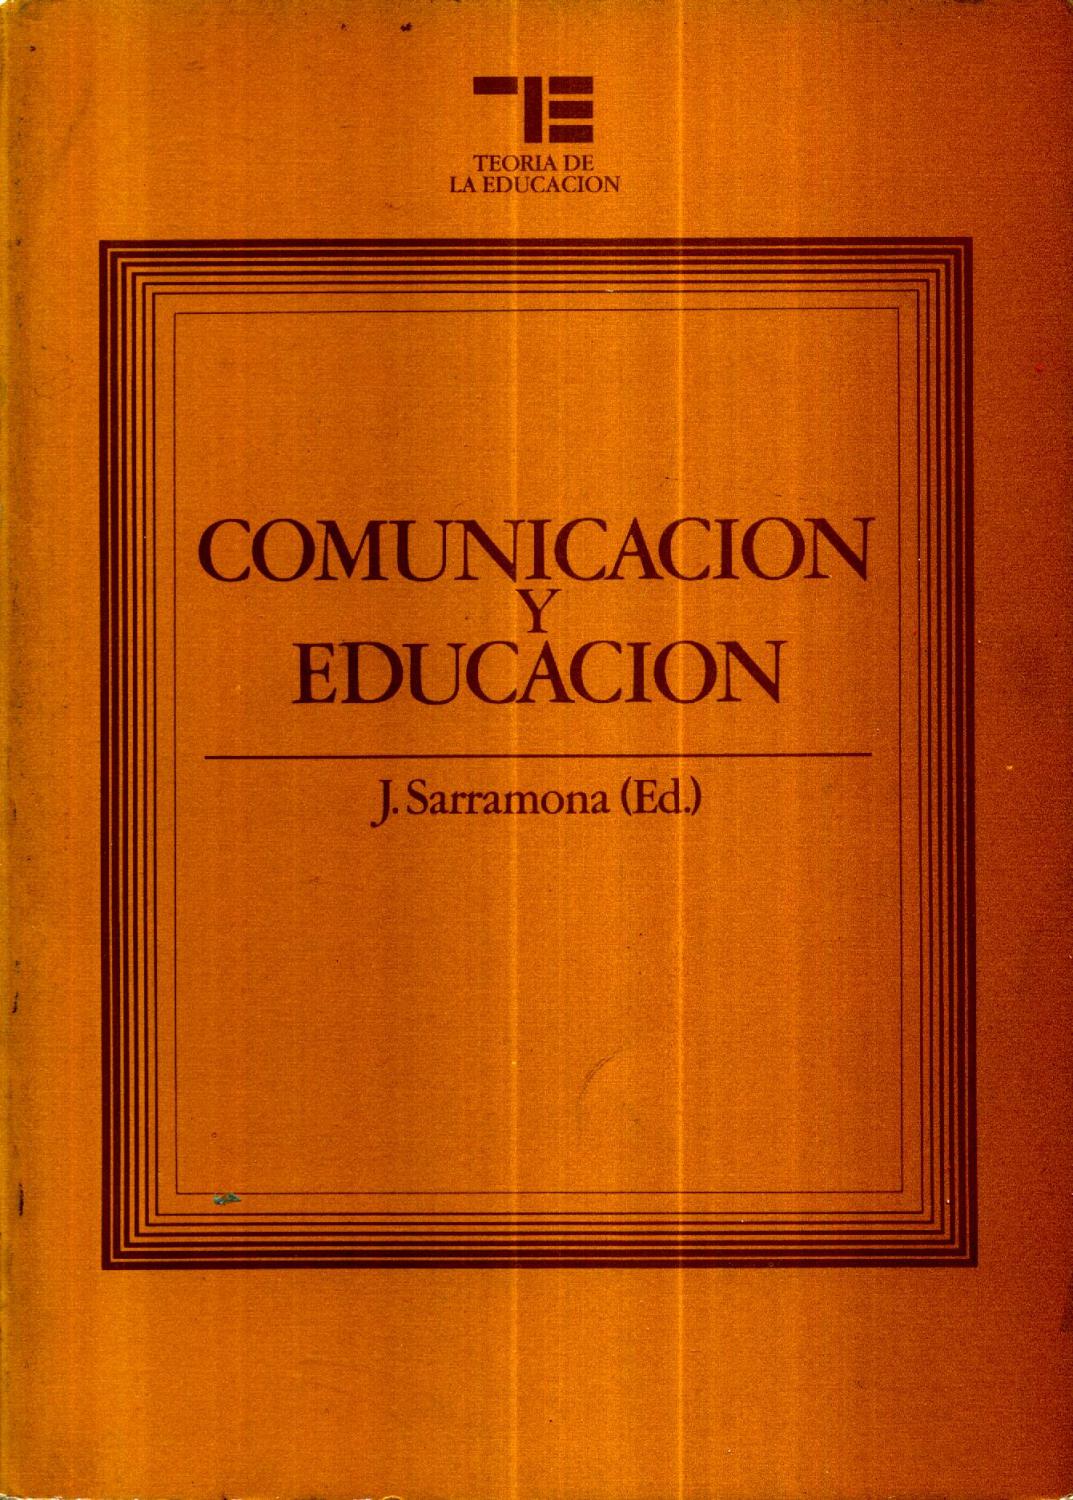 Comunicacion y educacion - J. Sarramona